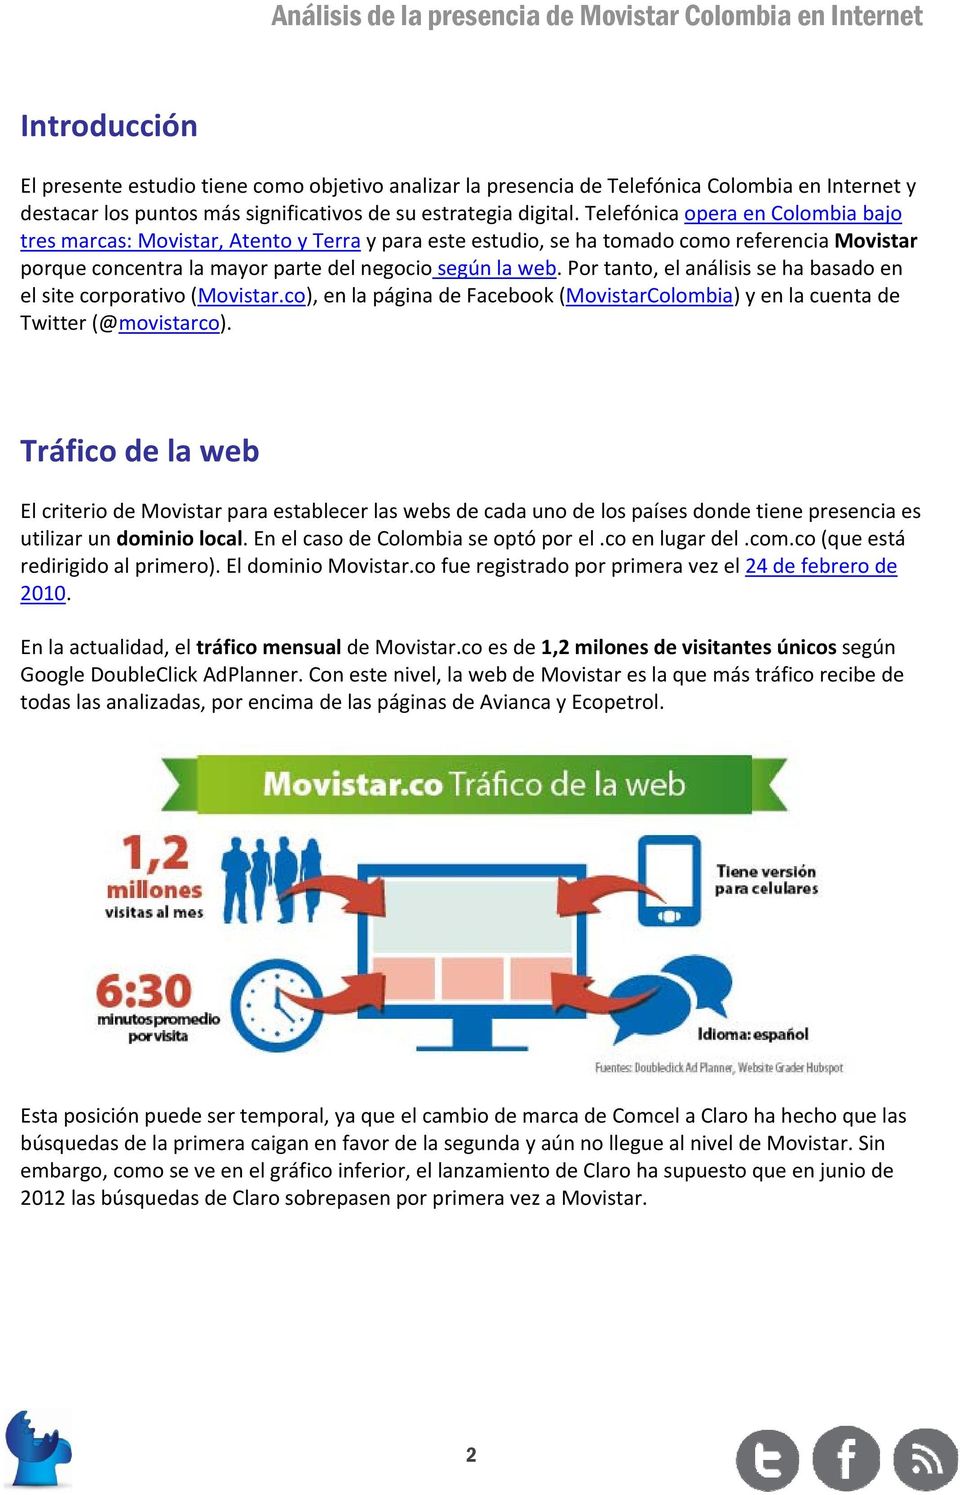 Por tanto, el análisis se ha basado en el site corporativo (Movistar.co), en la página de Facebook (MovistarColombia) y en la cuenta de Twitter (@movistarco).